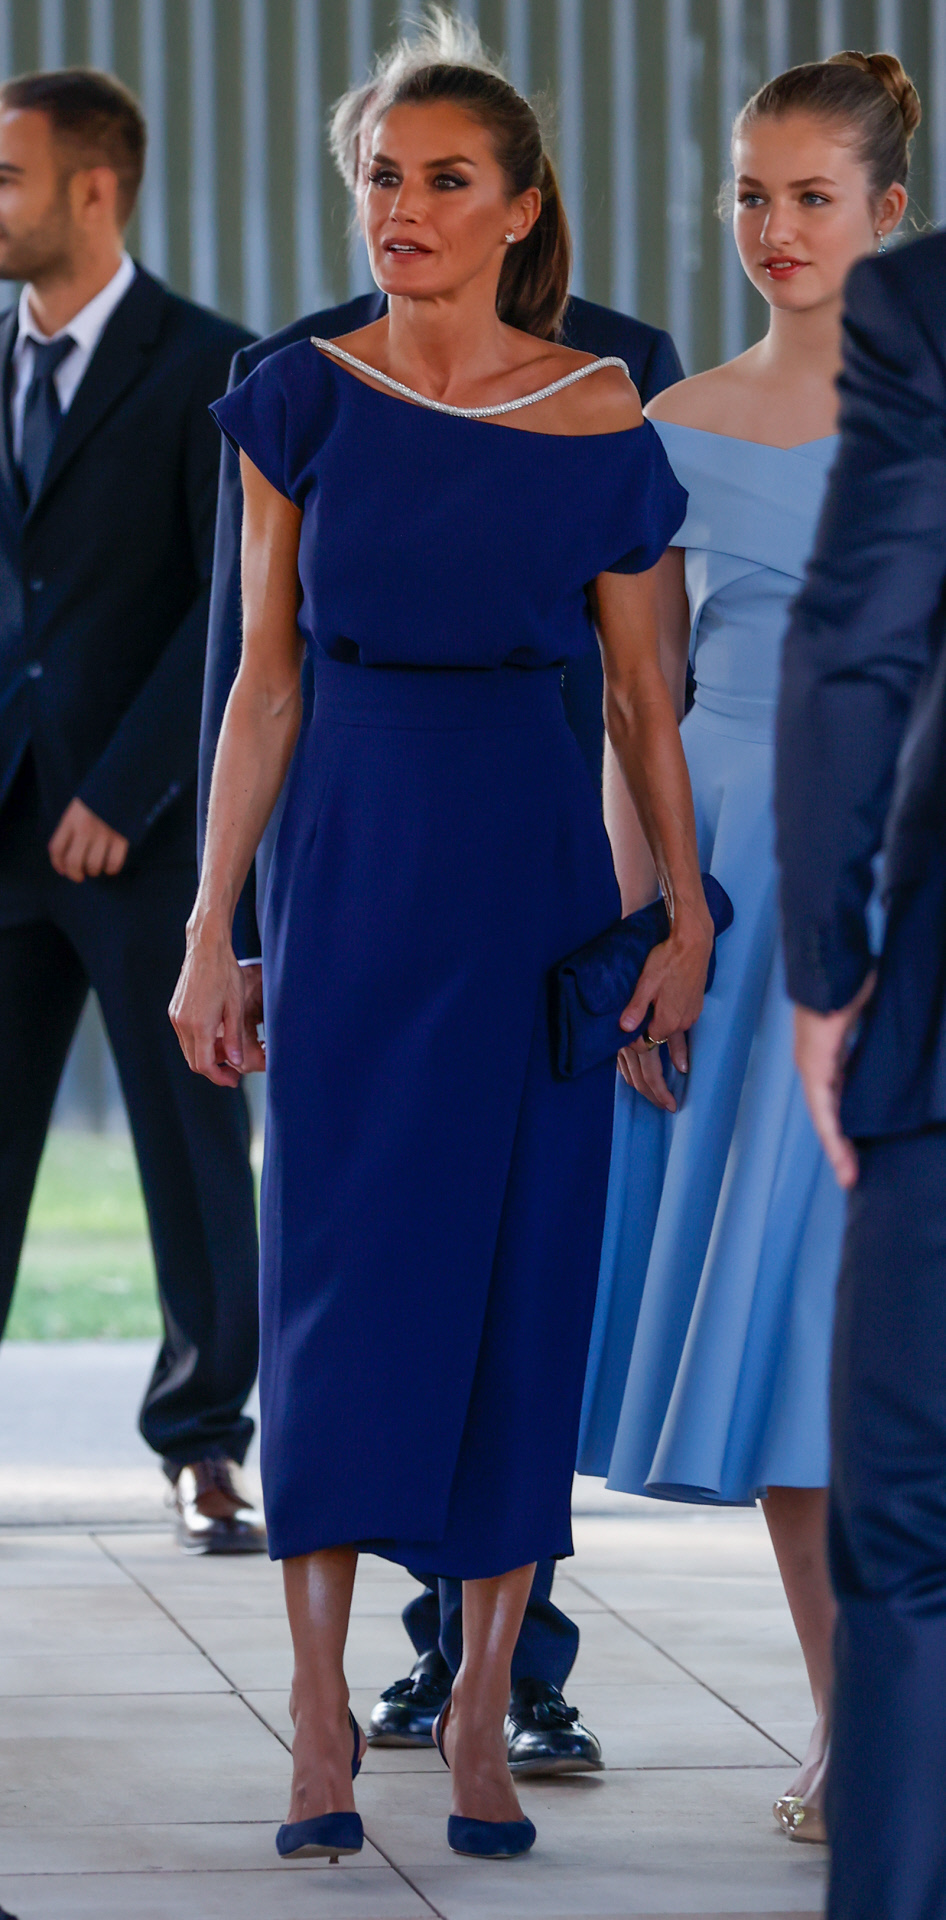 En los Premios Princesa de Girona, la reina Letizia parece haber recurrido a los aceites iluminadores corporales o a cremas hidratantes luminosas, sobre todo en la zona de las piernas y tobillos.